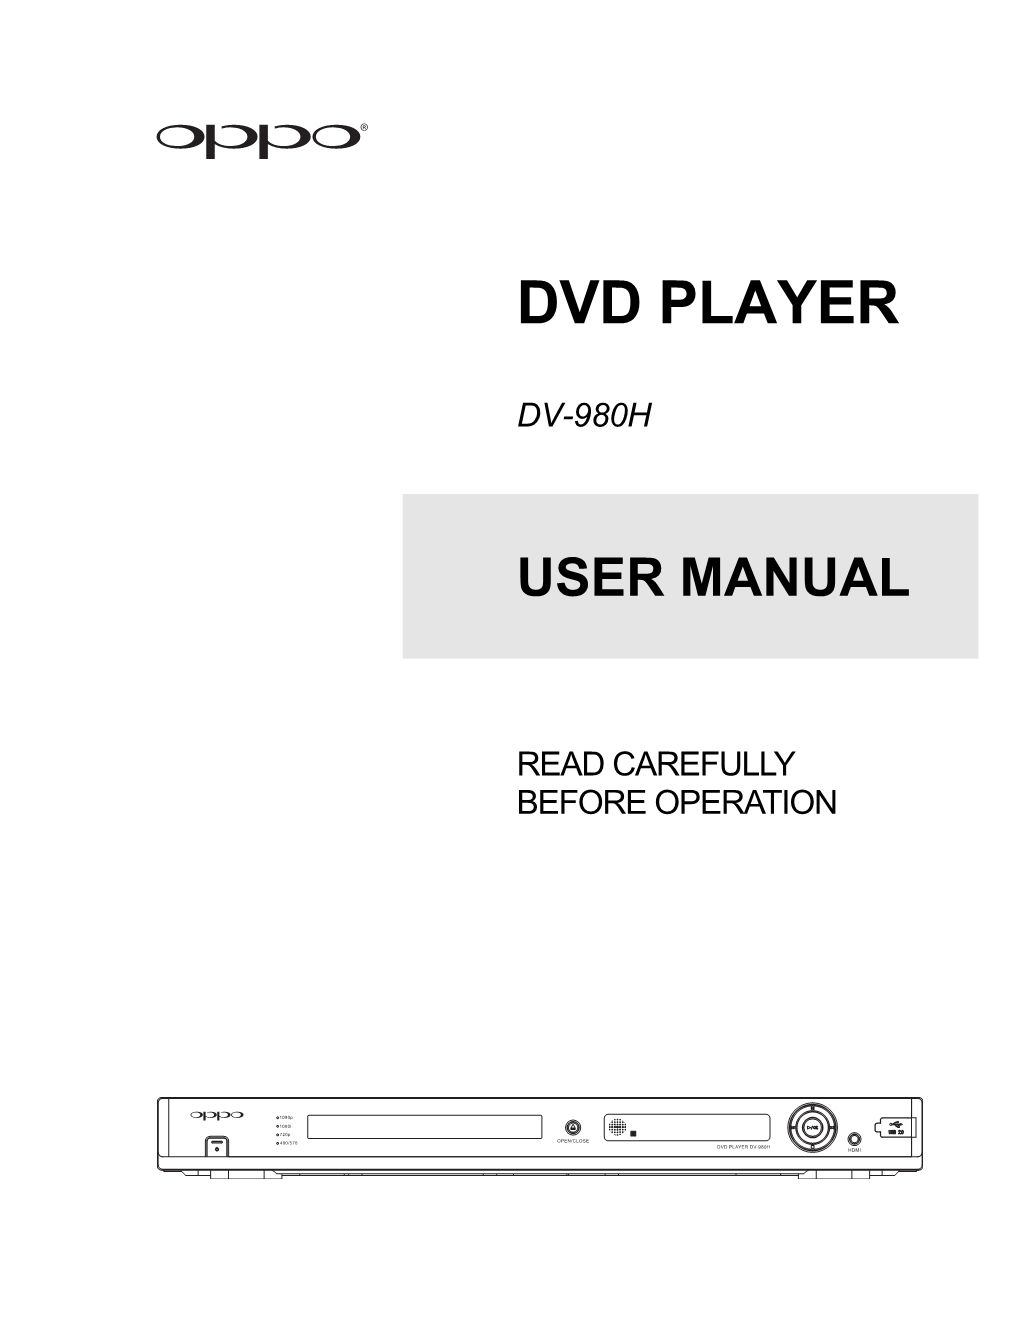 DV-980H User Manual